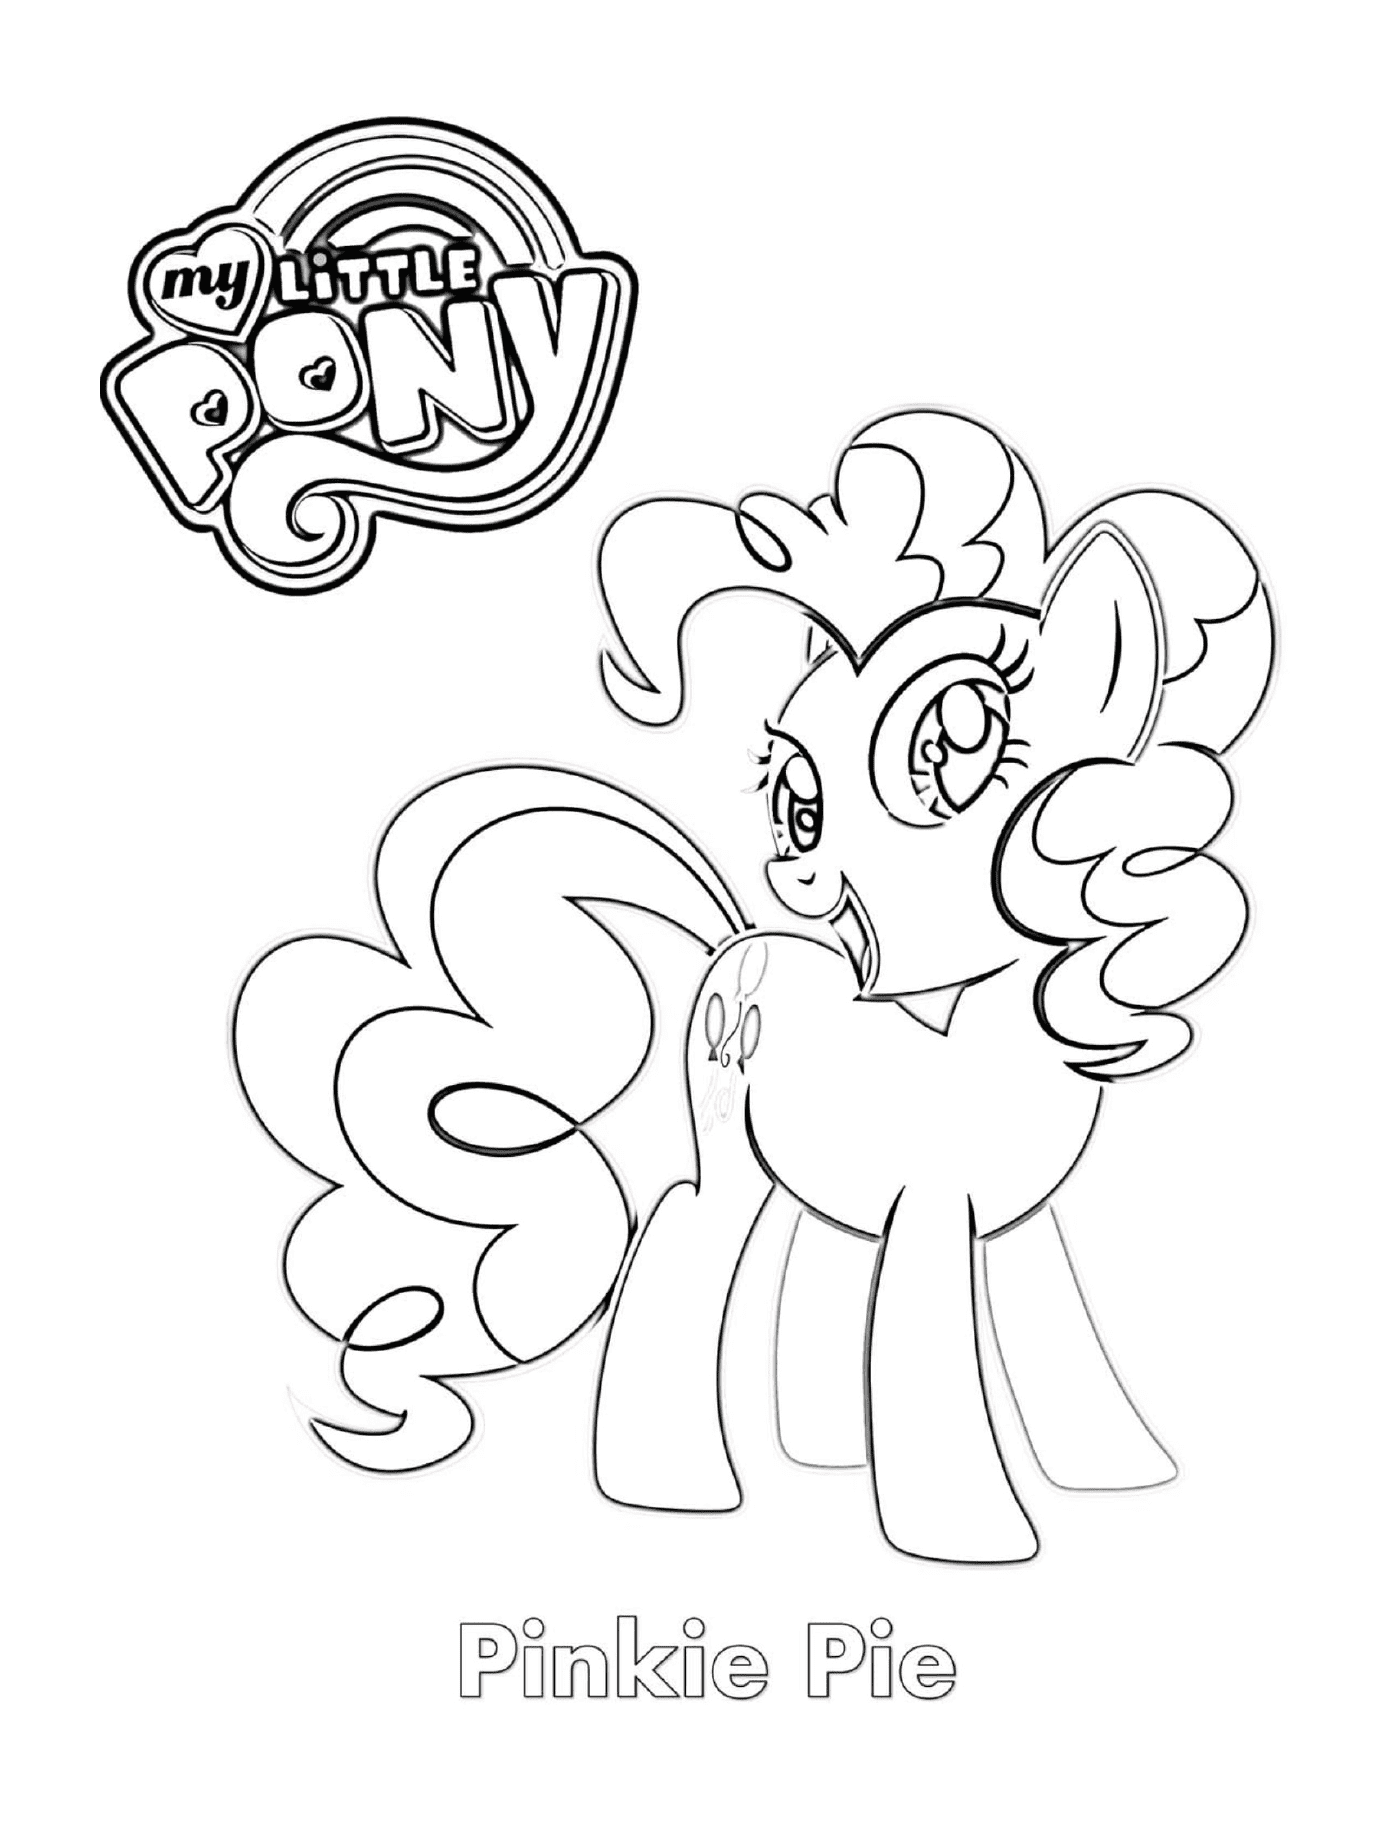  Pinkie Pie, a cute pony 